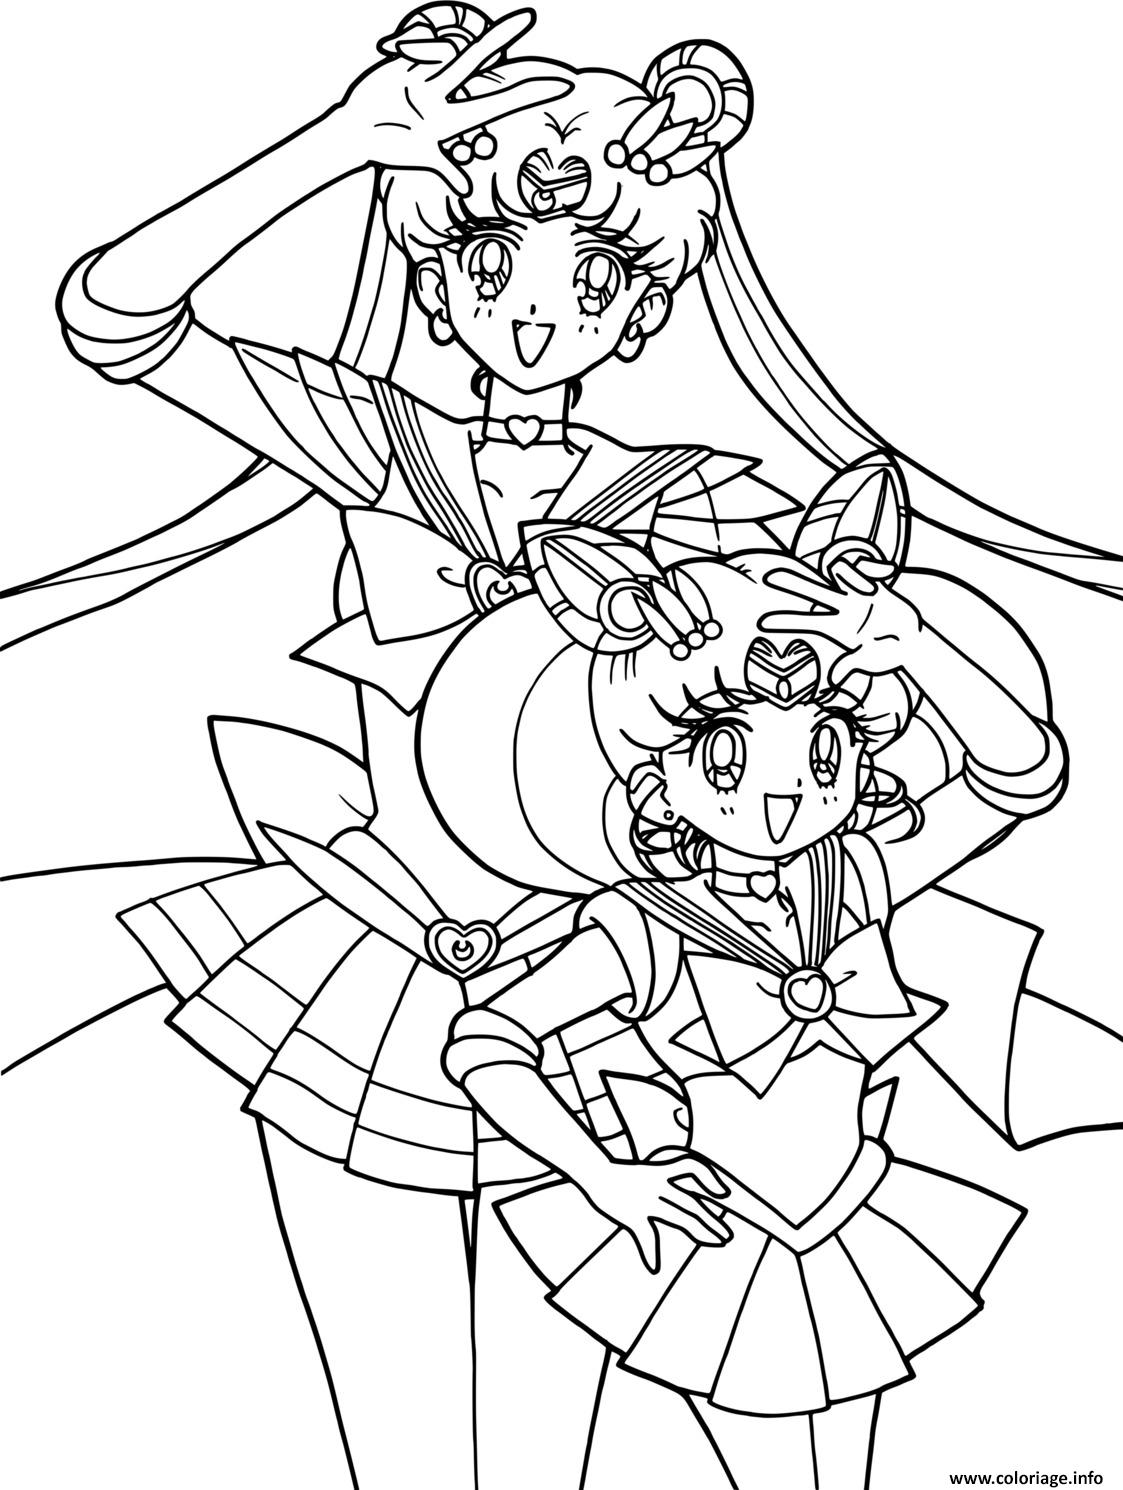 Dessin Sailor Moon Manga Coloriage Gratuit à Imprimer